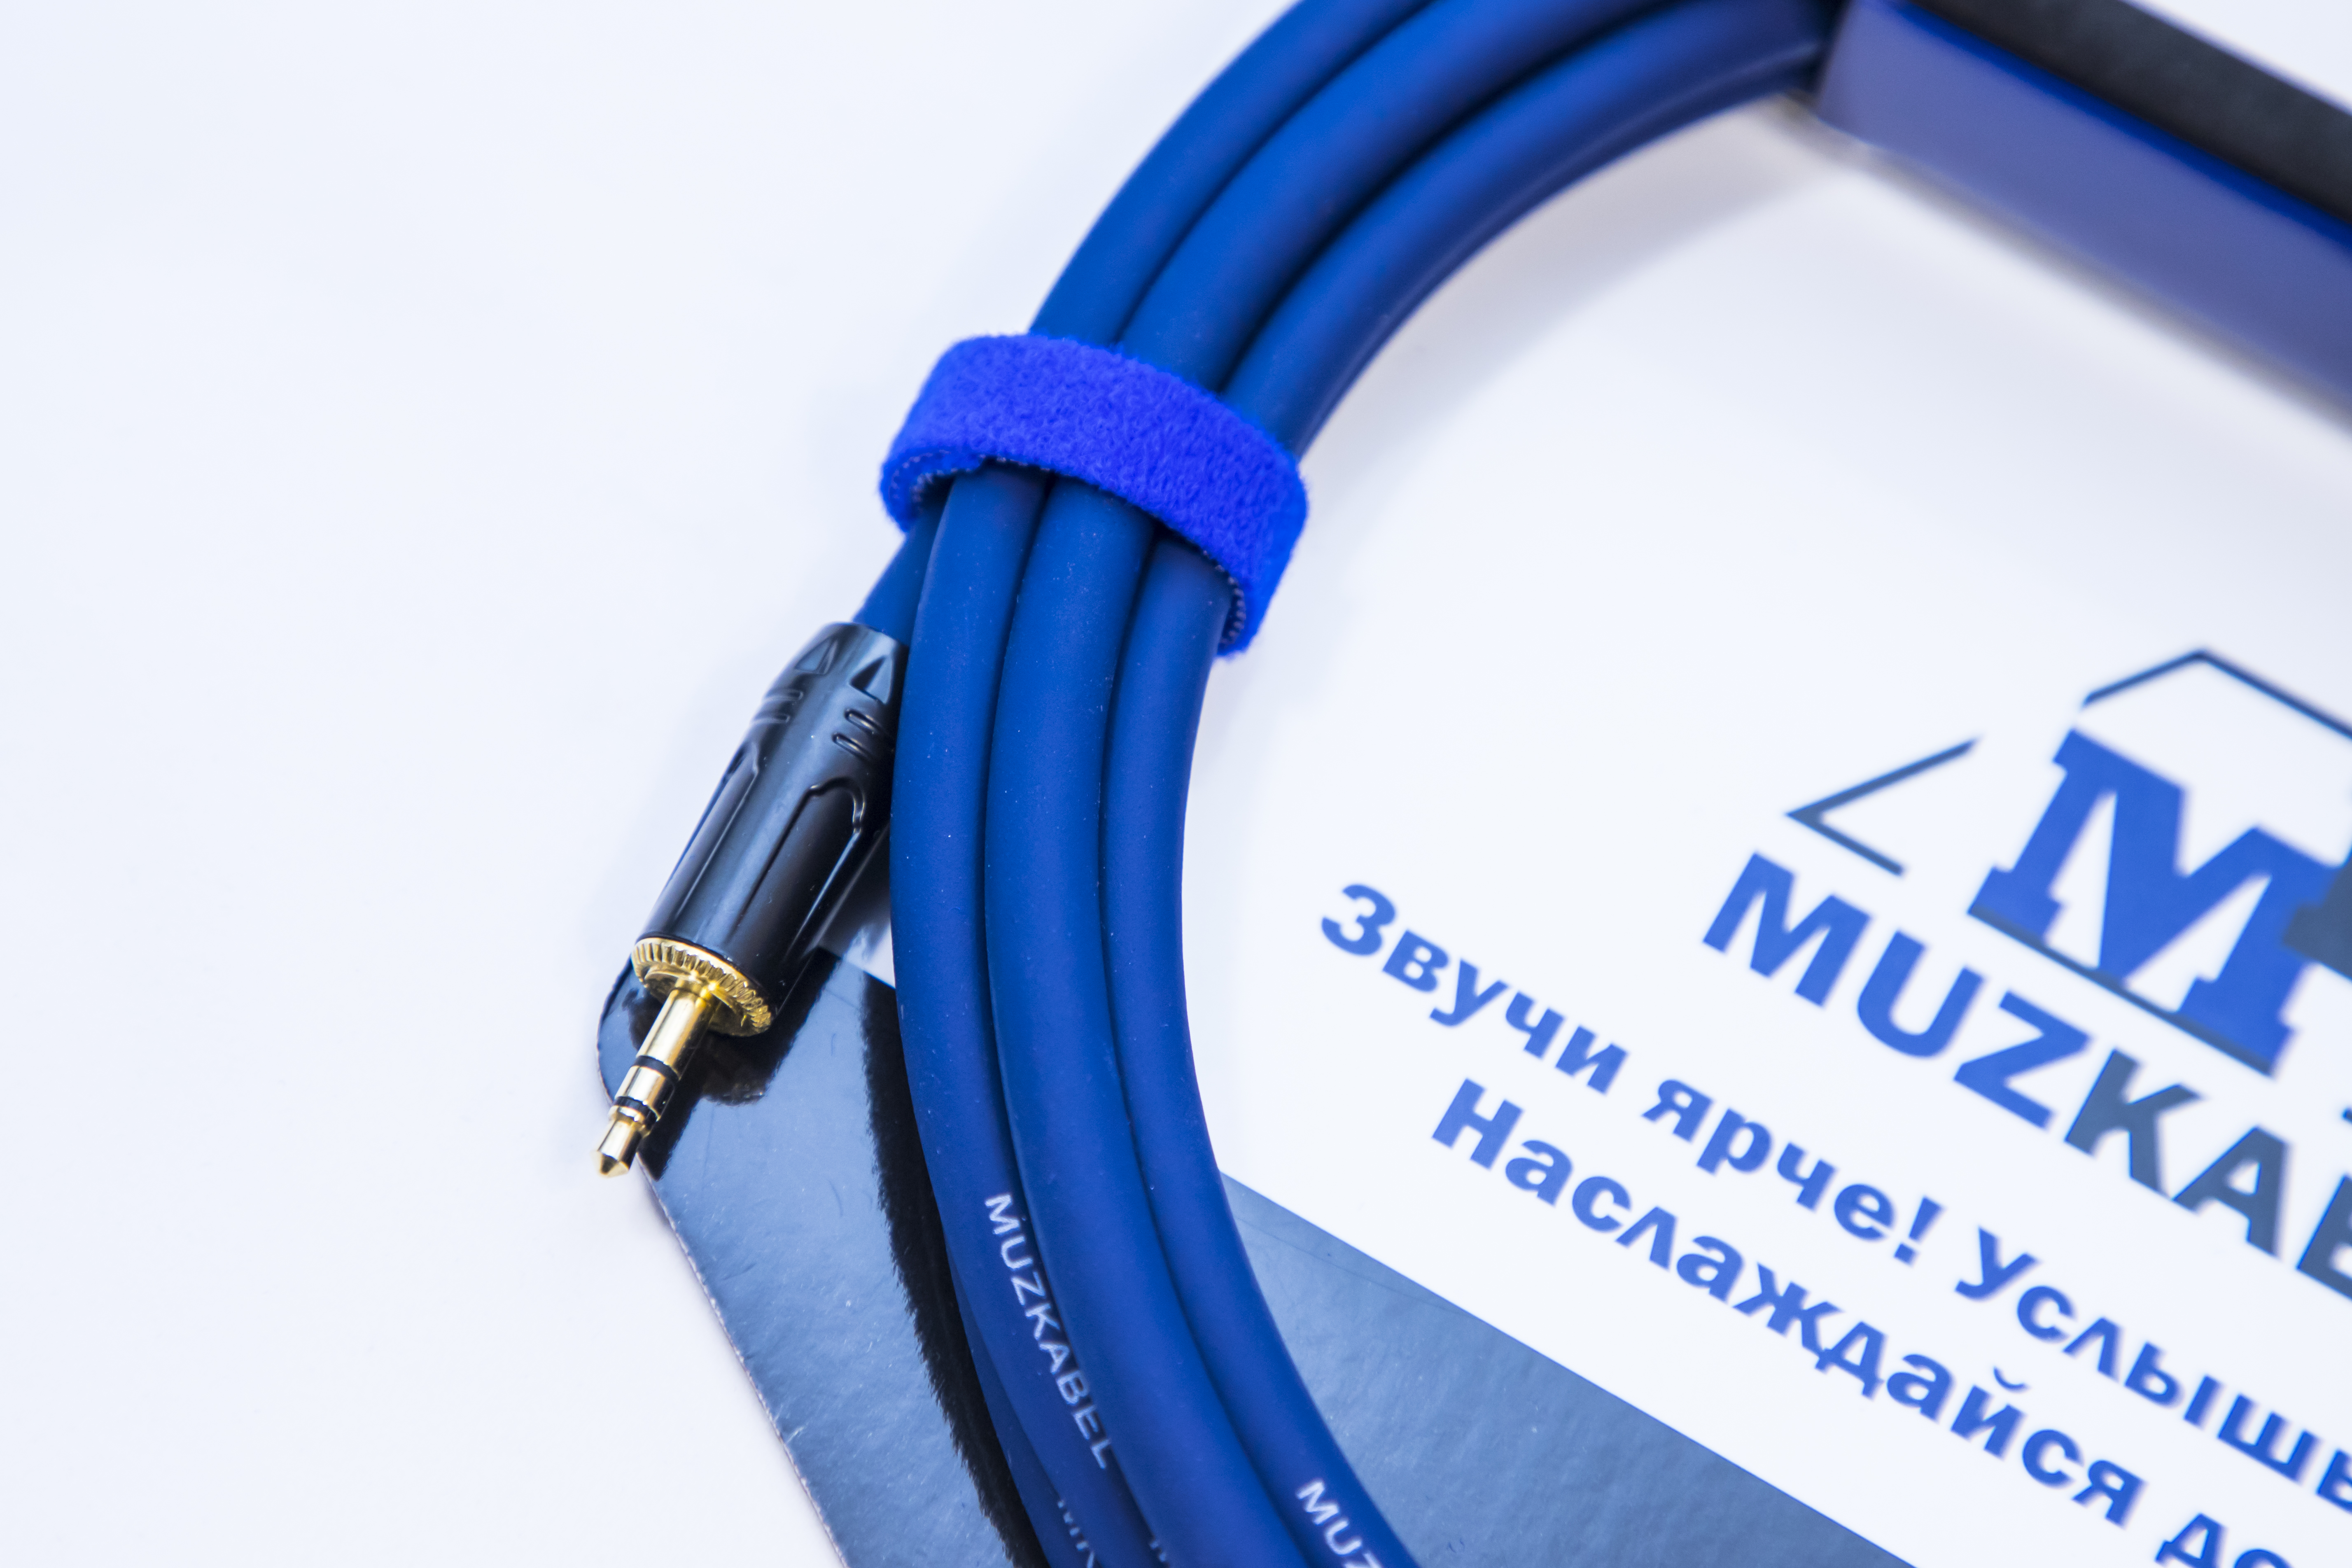 Аудио кабель MUZKABEL MFXMK1S - 6 метров, MINI JACK (3.5) - MINI JACK (3.5)